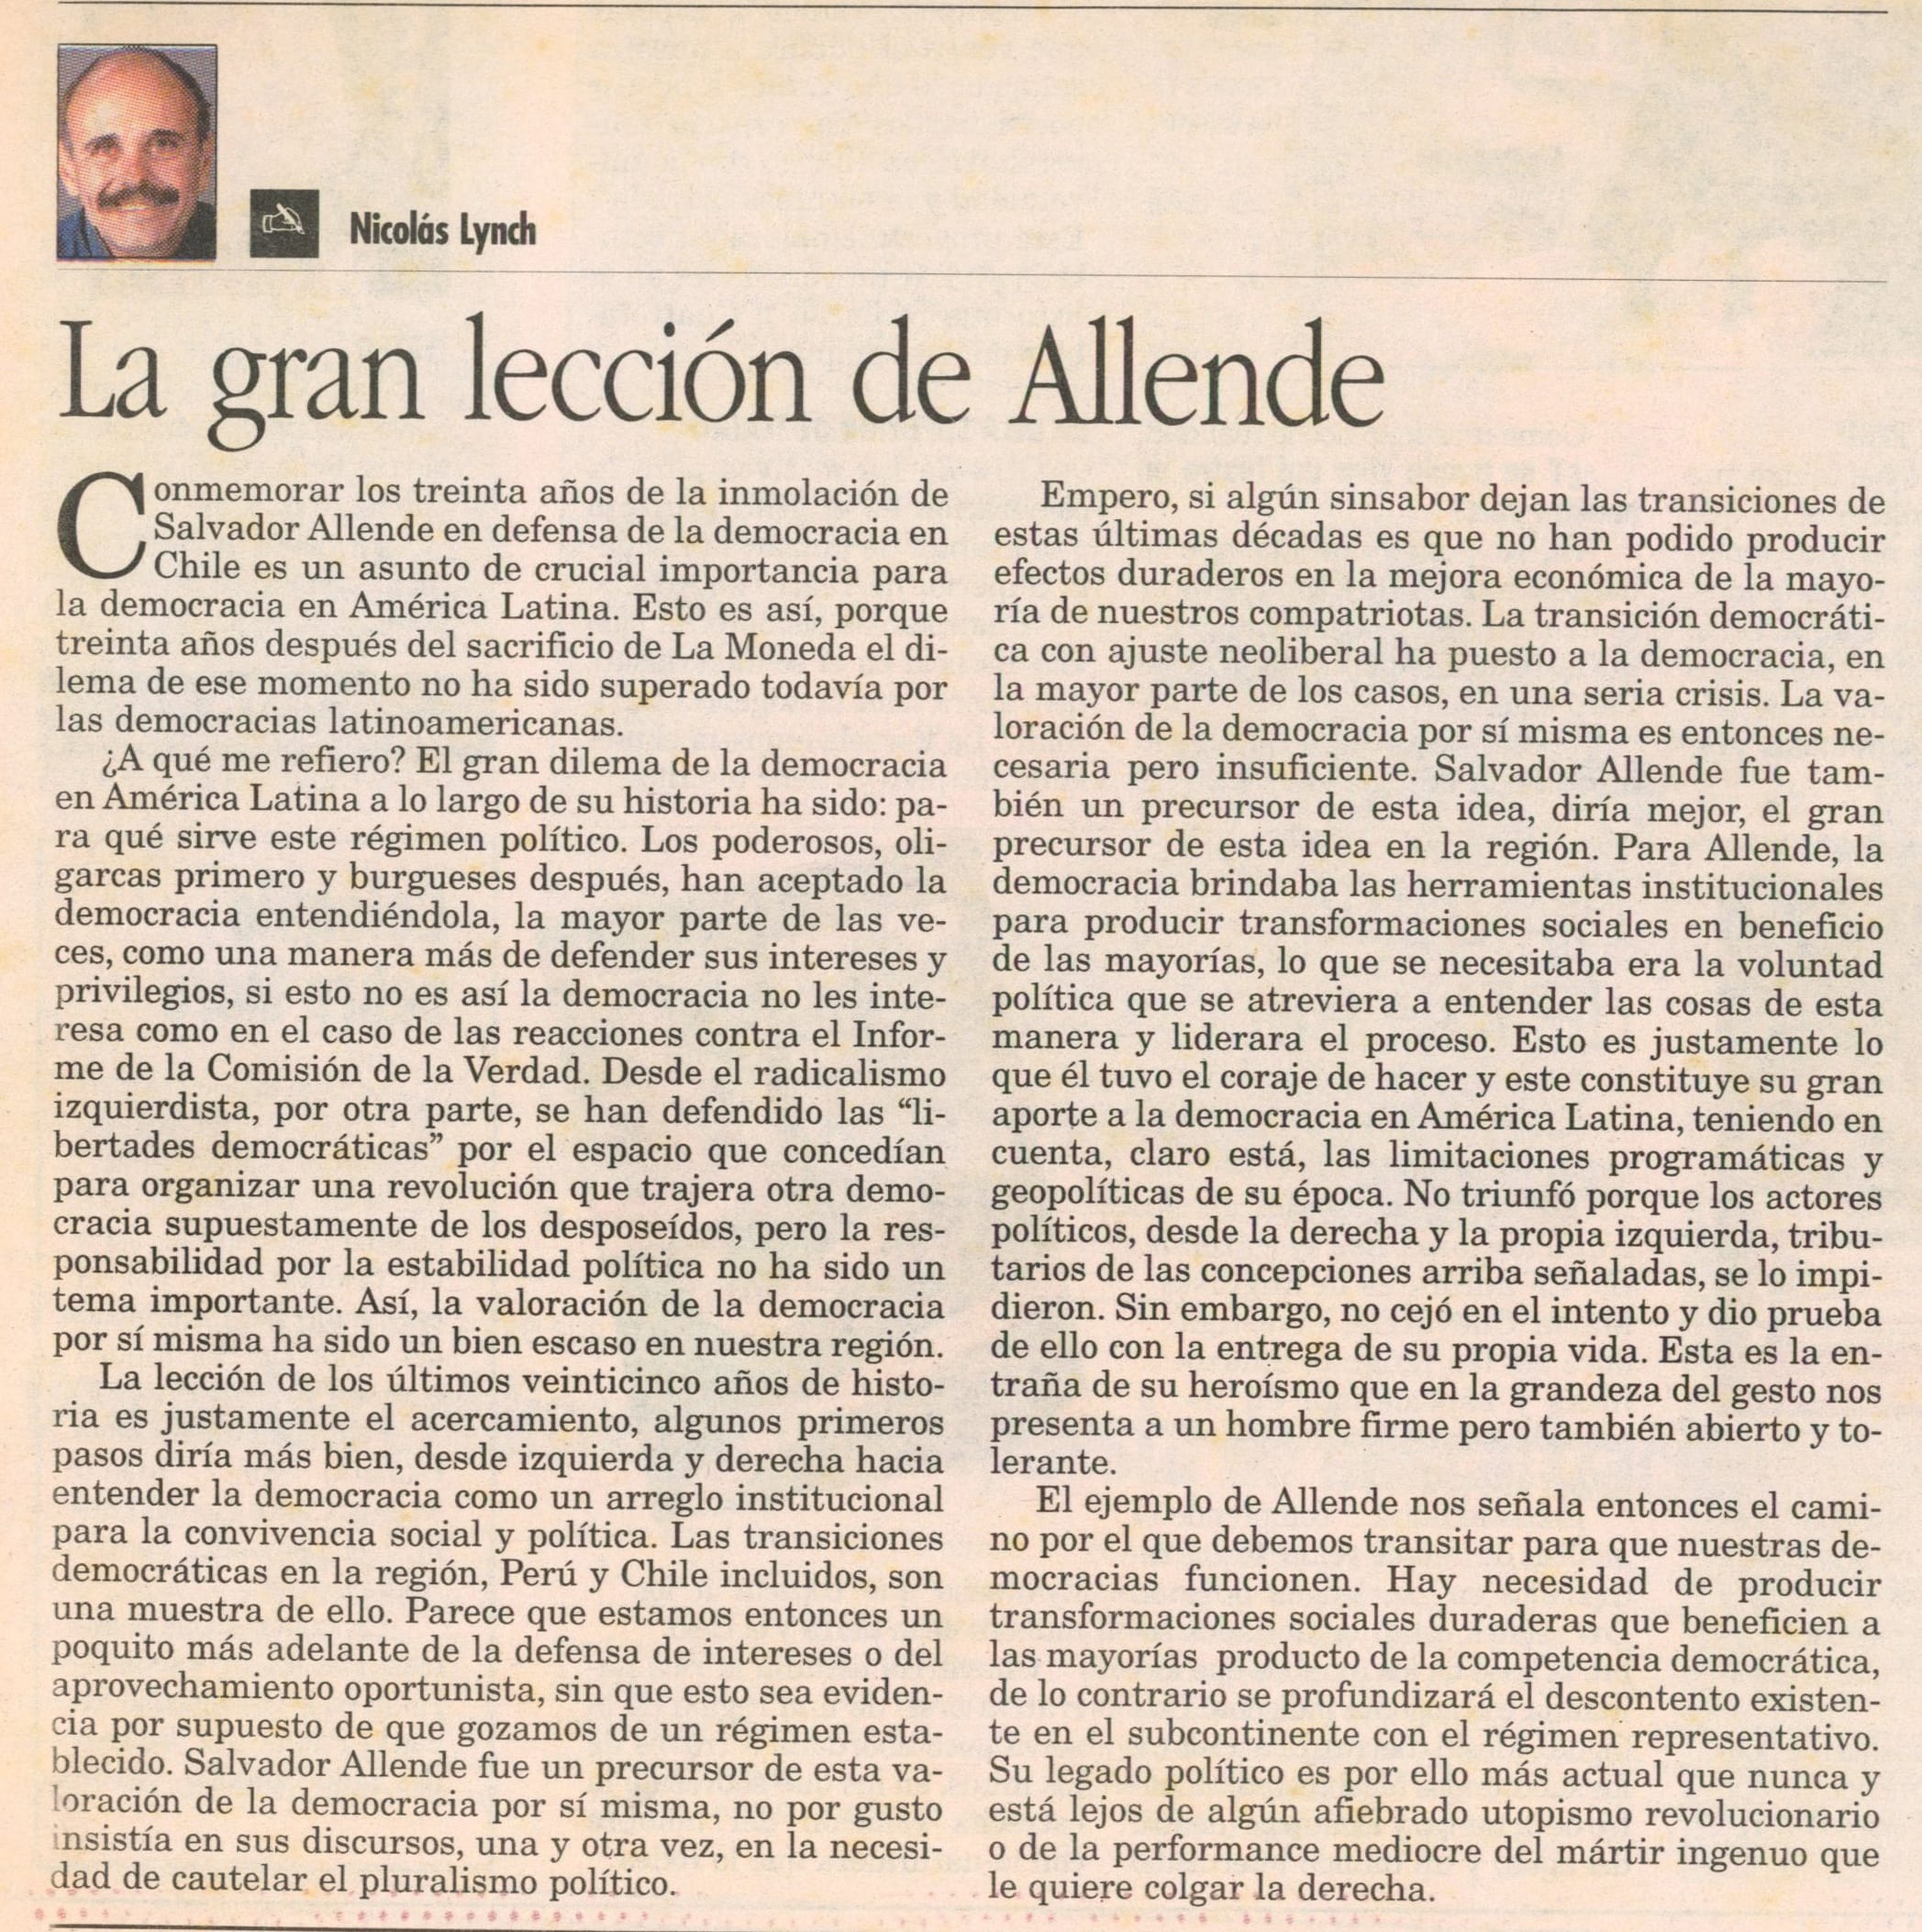 La gran lección de Allende NL LR 15092003